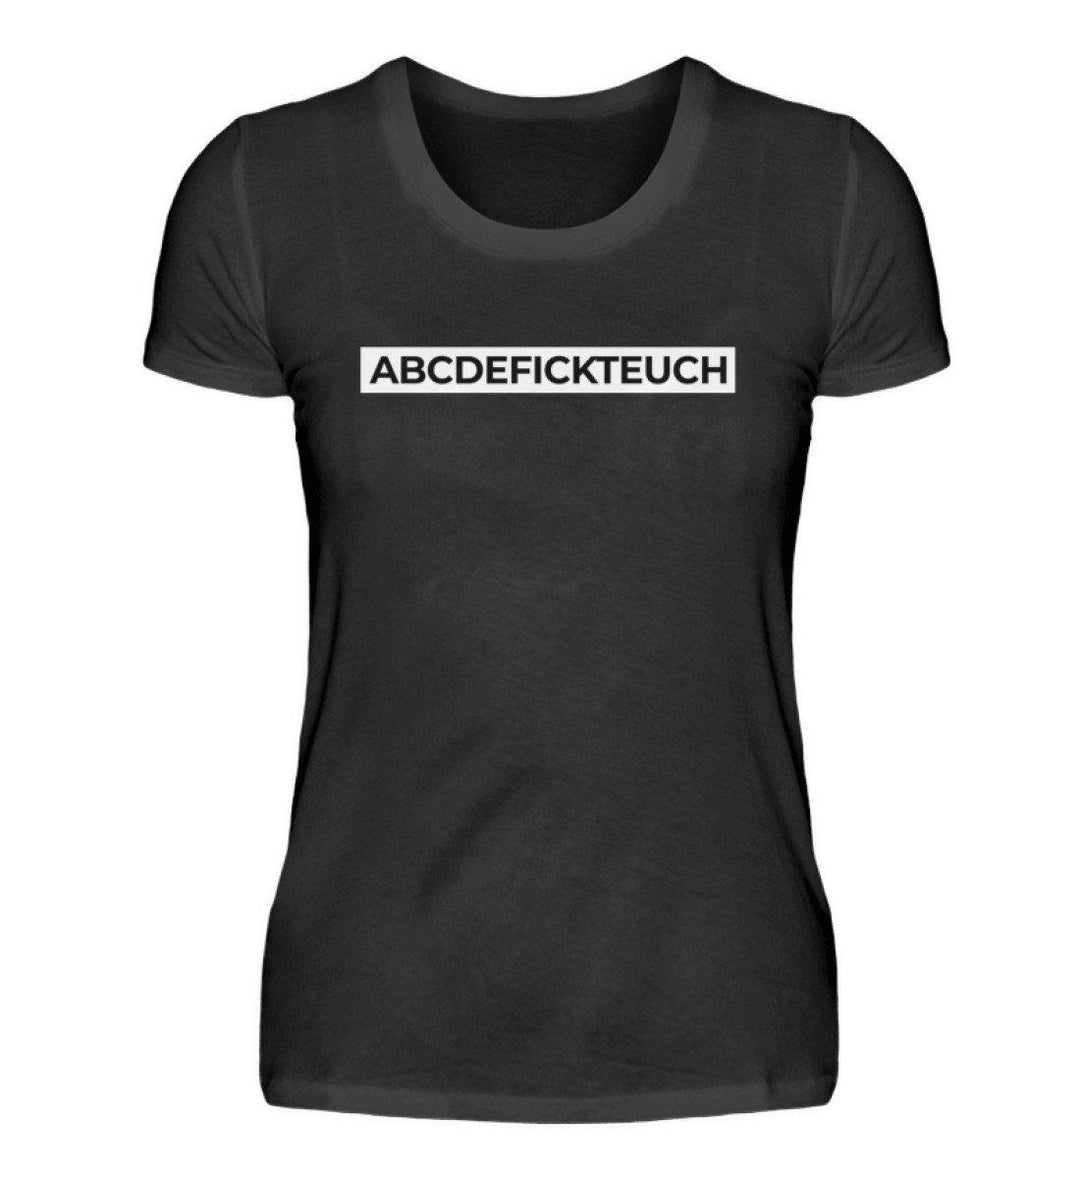 ABCDEFICKTEUCH - Words on Shirts  - Damenshirt - Words on Shirts Sag es mit dem Mittelfinger Shirts Hoodies Sweatshirt Taschen Gymsack Spruch Sprüche Statement